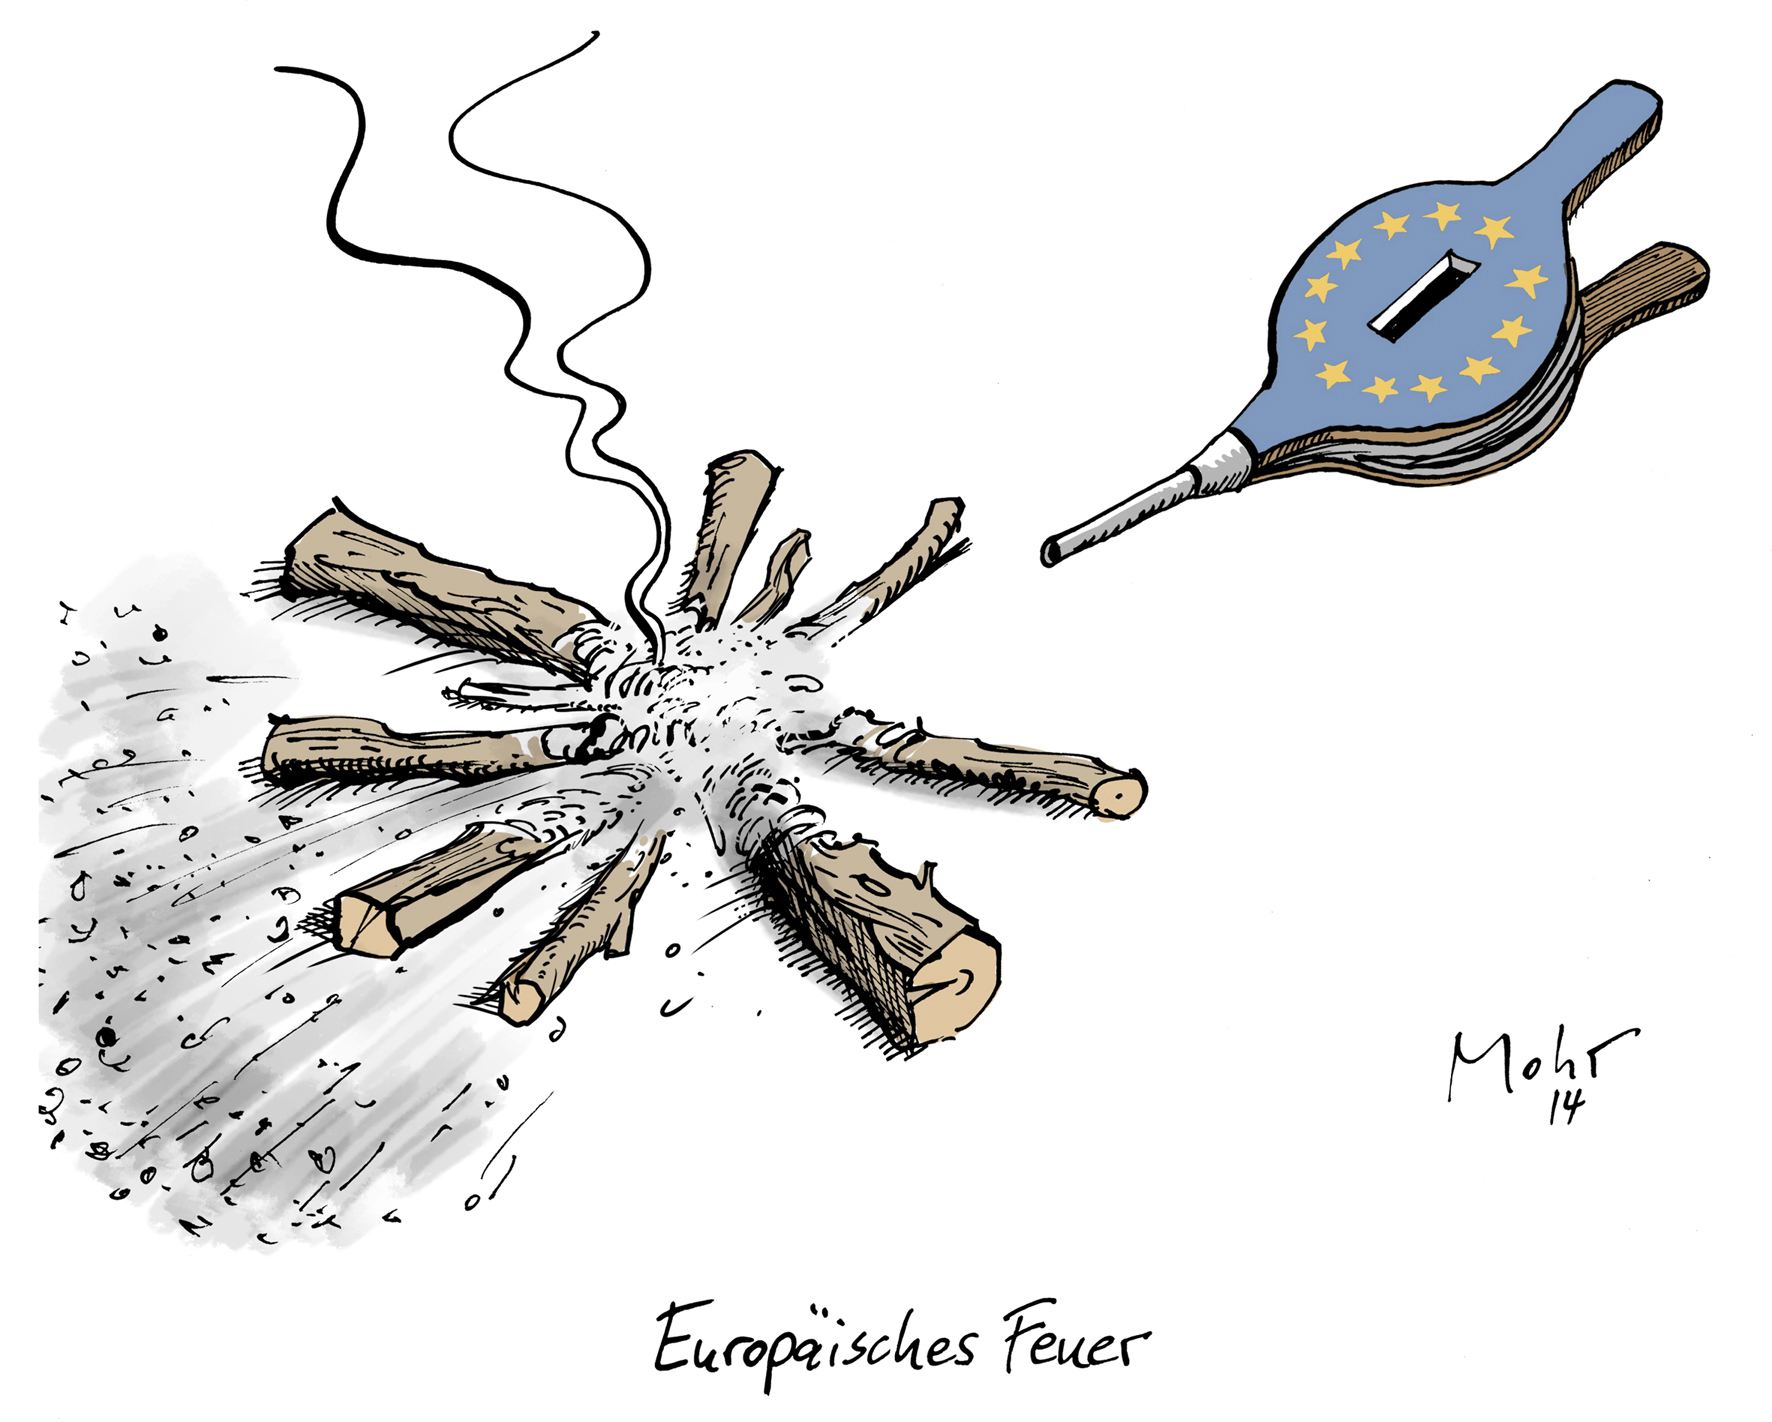 Europäisches Feuer